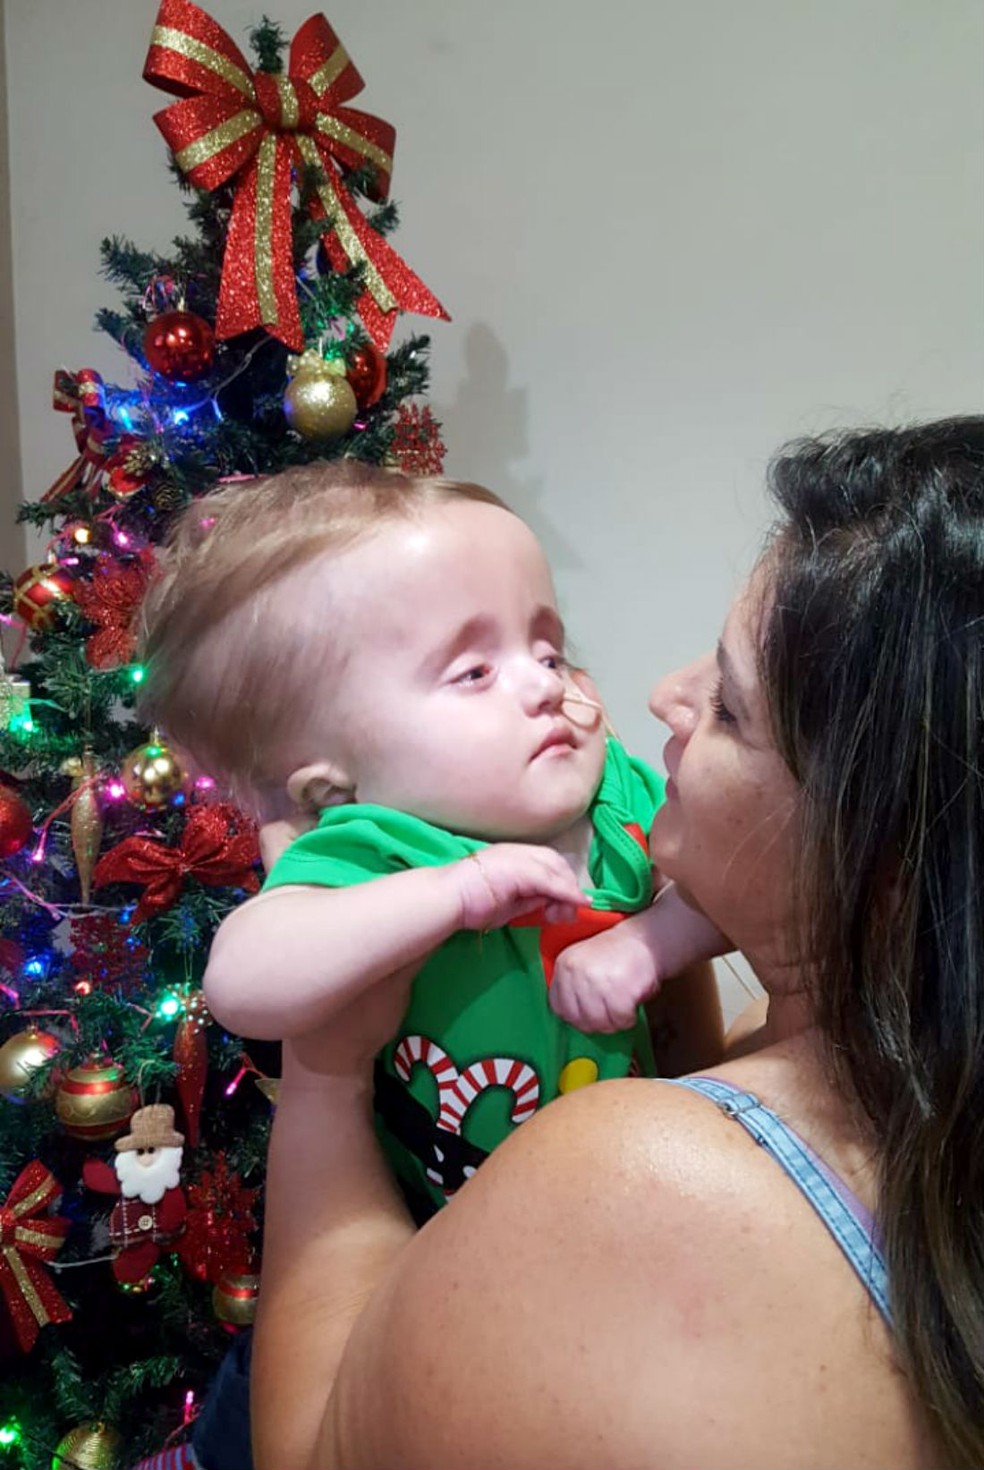 Érica Albino com o filho Heitor no Natal do ano passado: "Nem ia montar árvore de Natal, mas depois da doação mudei de ideia" — Foto: Arquivo pessoal